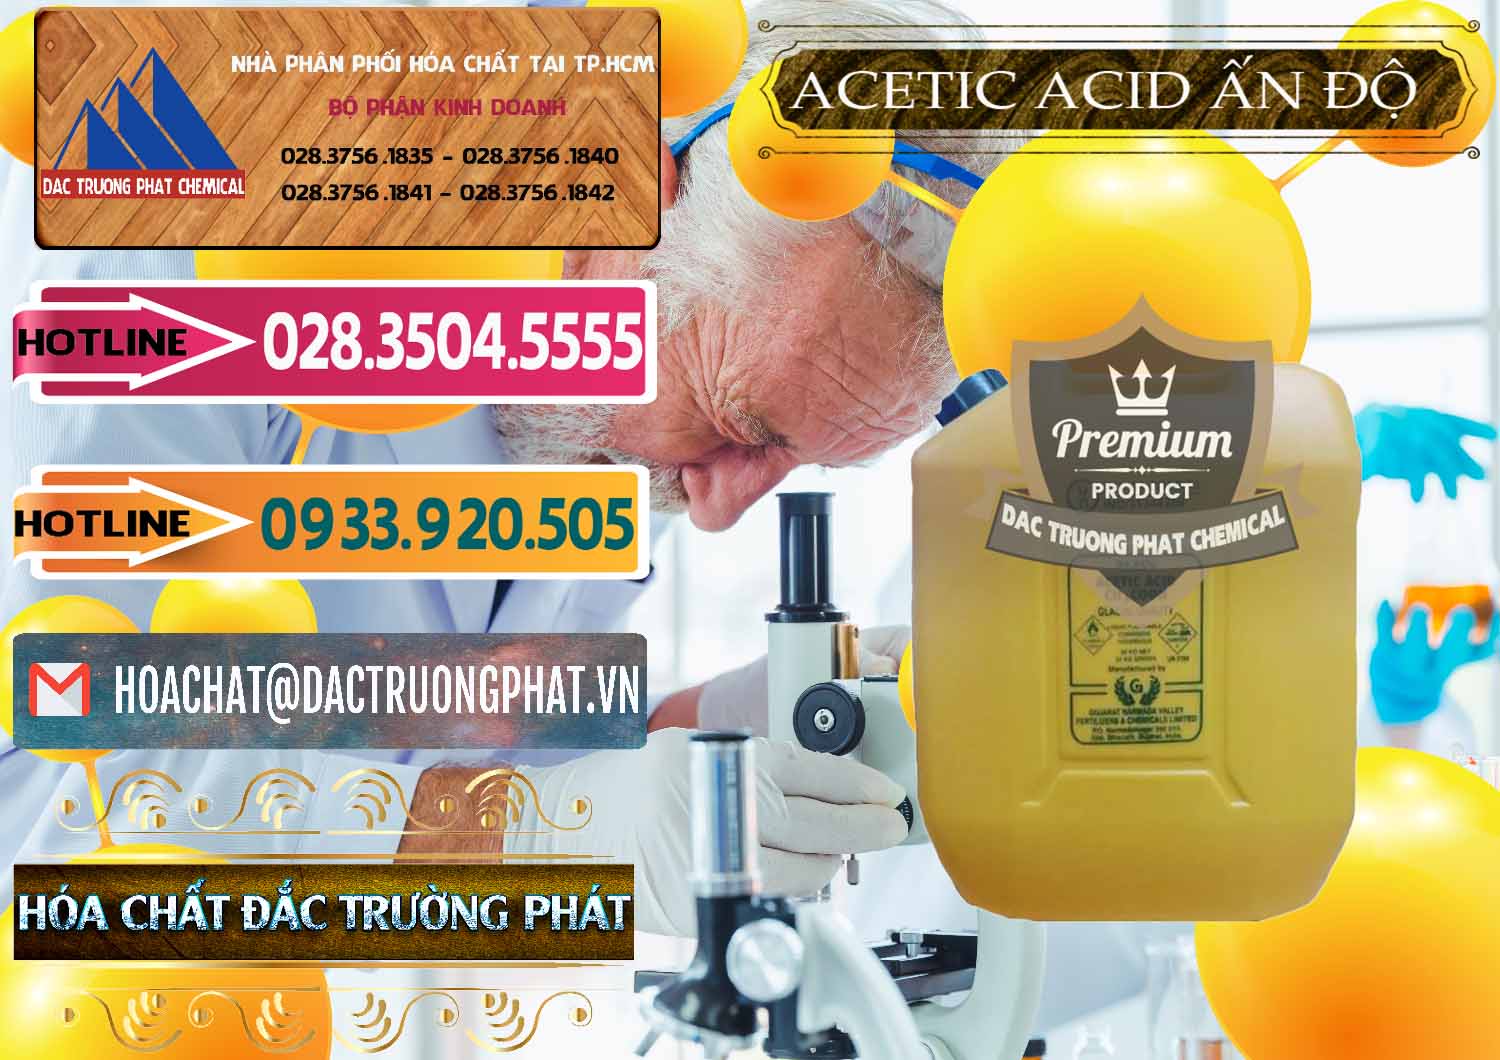 Công ty chuyên nhập khẩu _ bán Acetic Acid – Axit Acetic Ấn Độ India - 0359 - Cty chuyên cung cấp và bán hóa chất tại TP.HCM - dactruongphat.vn